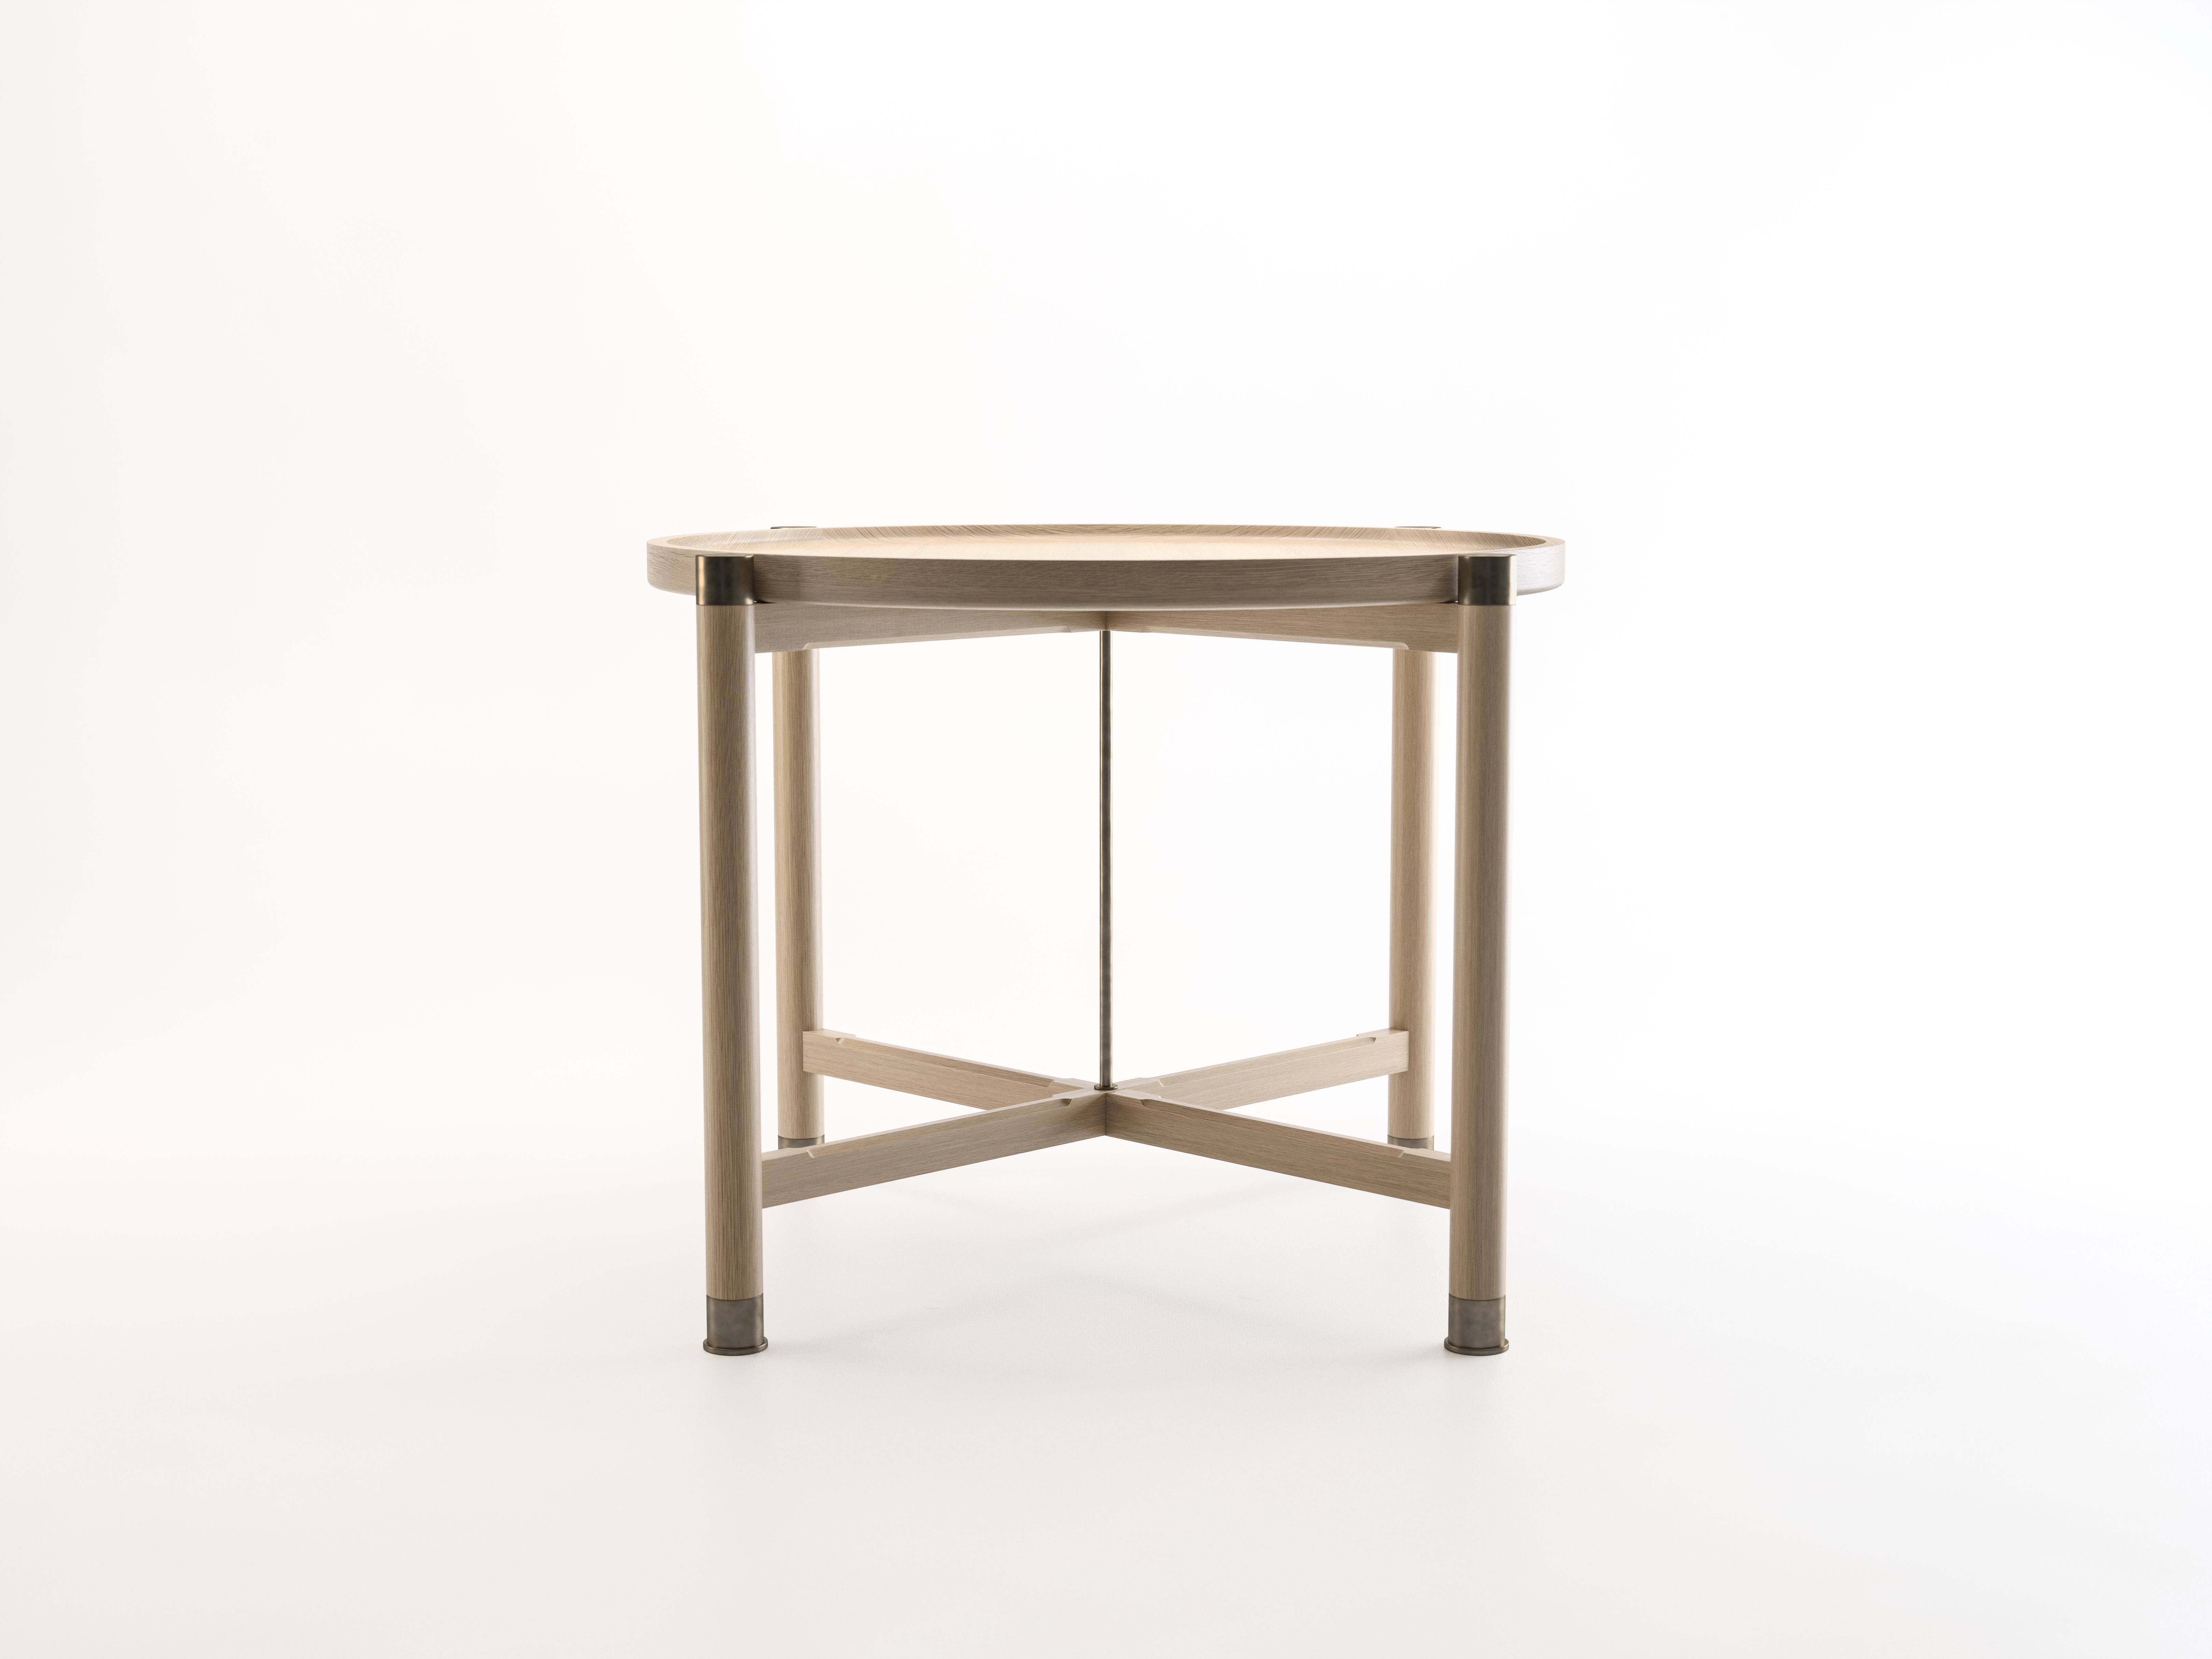 La table d'appoint Otto est une table aux proportions généreuses et à la forme simple et bien articulée.
Disponible en chêne ou en noyer, il présente un plateau de coupe rond, d'importantes ferrures en laiton antique, une tige centrale en laiton et